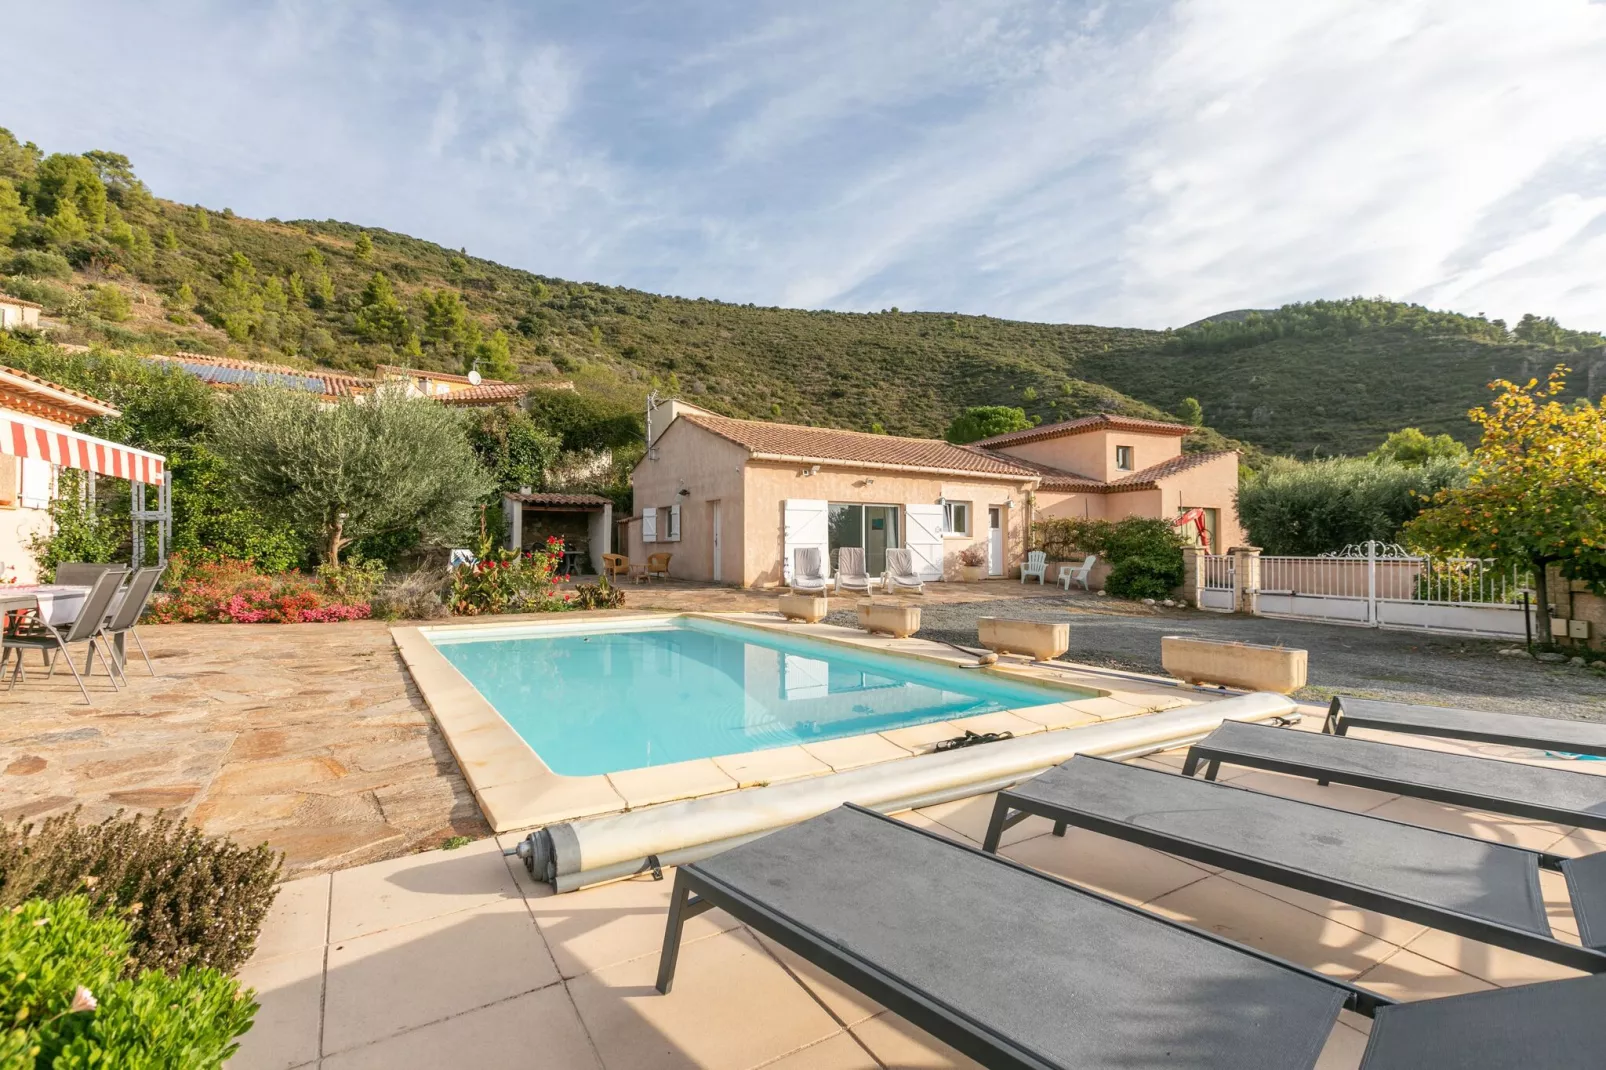 Huis in Zuid-Frankrijk met privé zwembad-Zwembad